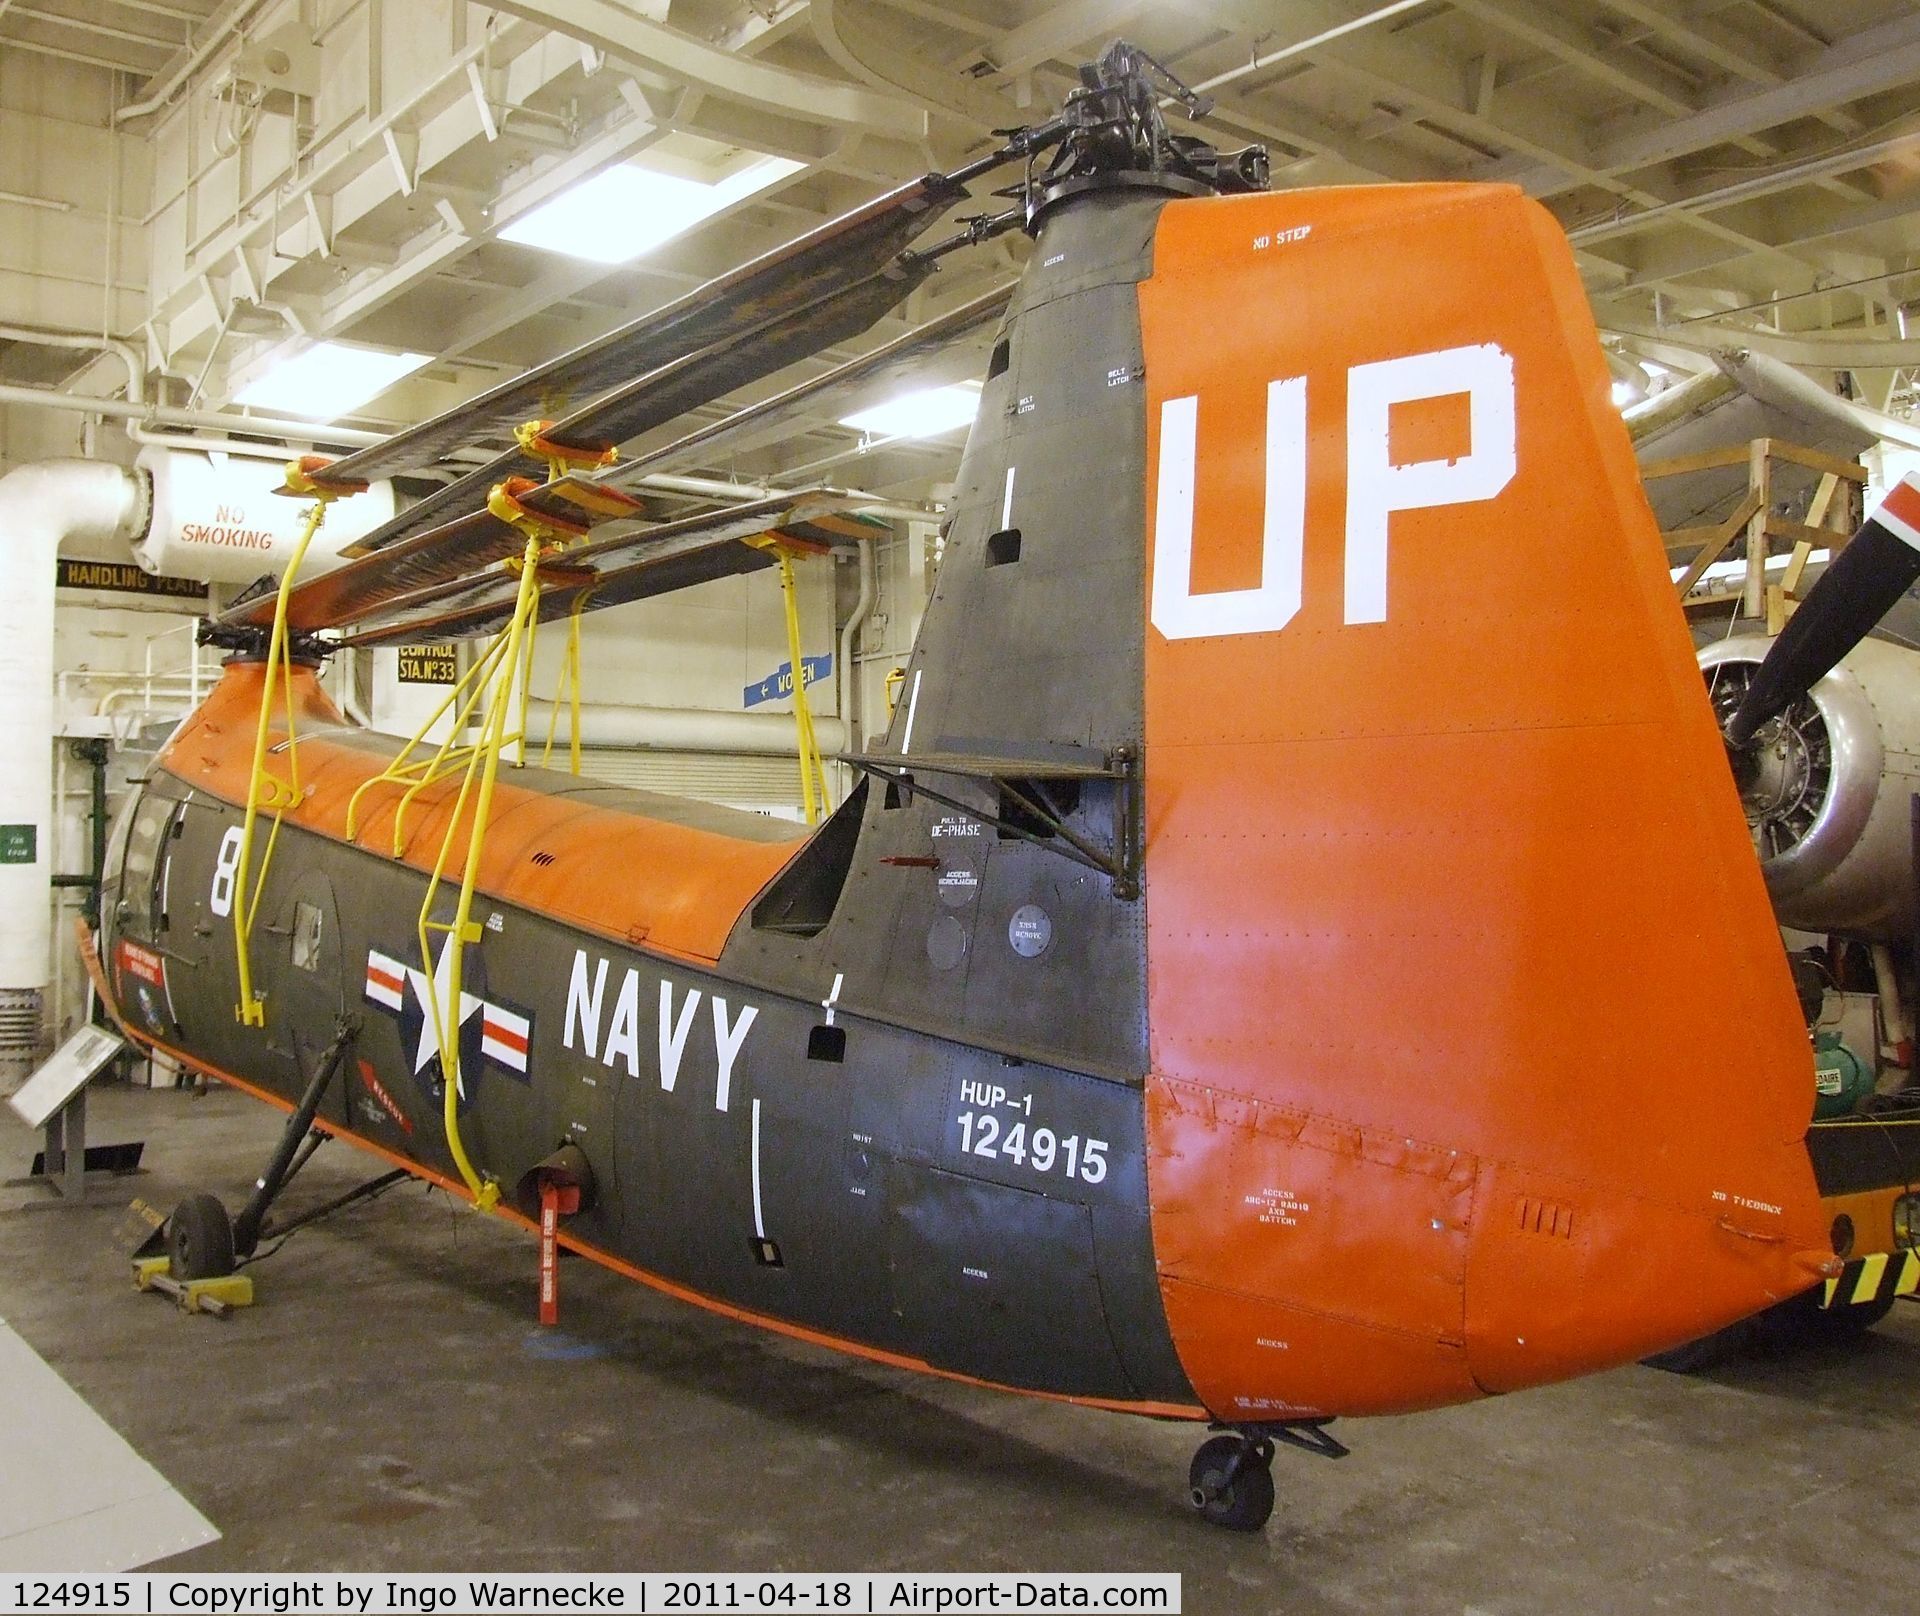 124915, Piasecki HUP-1 Retriever C/N 8, Piasecki HUP-1 Retriever at the USS Hornet Museum, Alameda CA